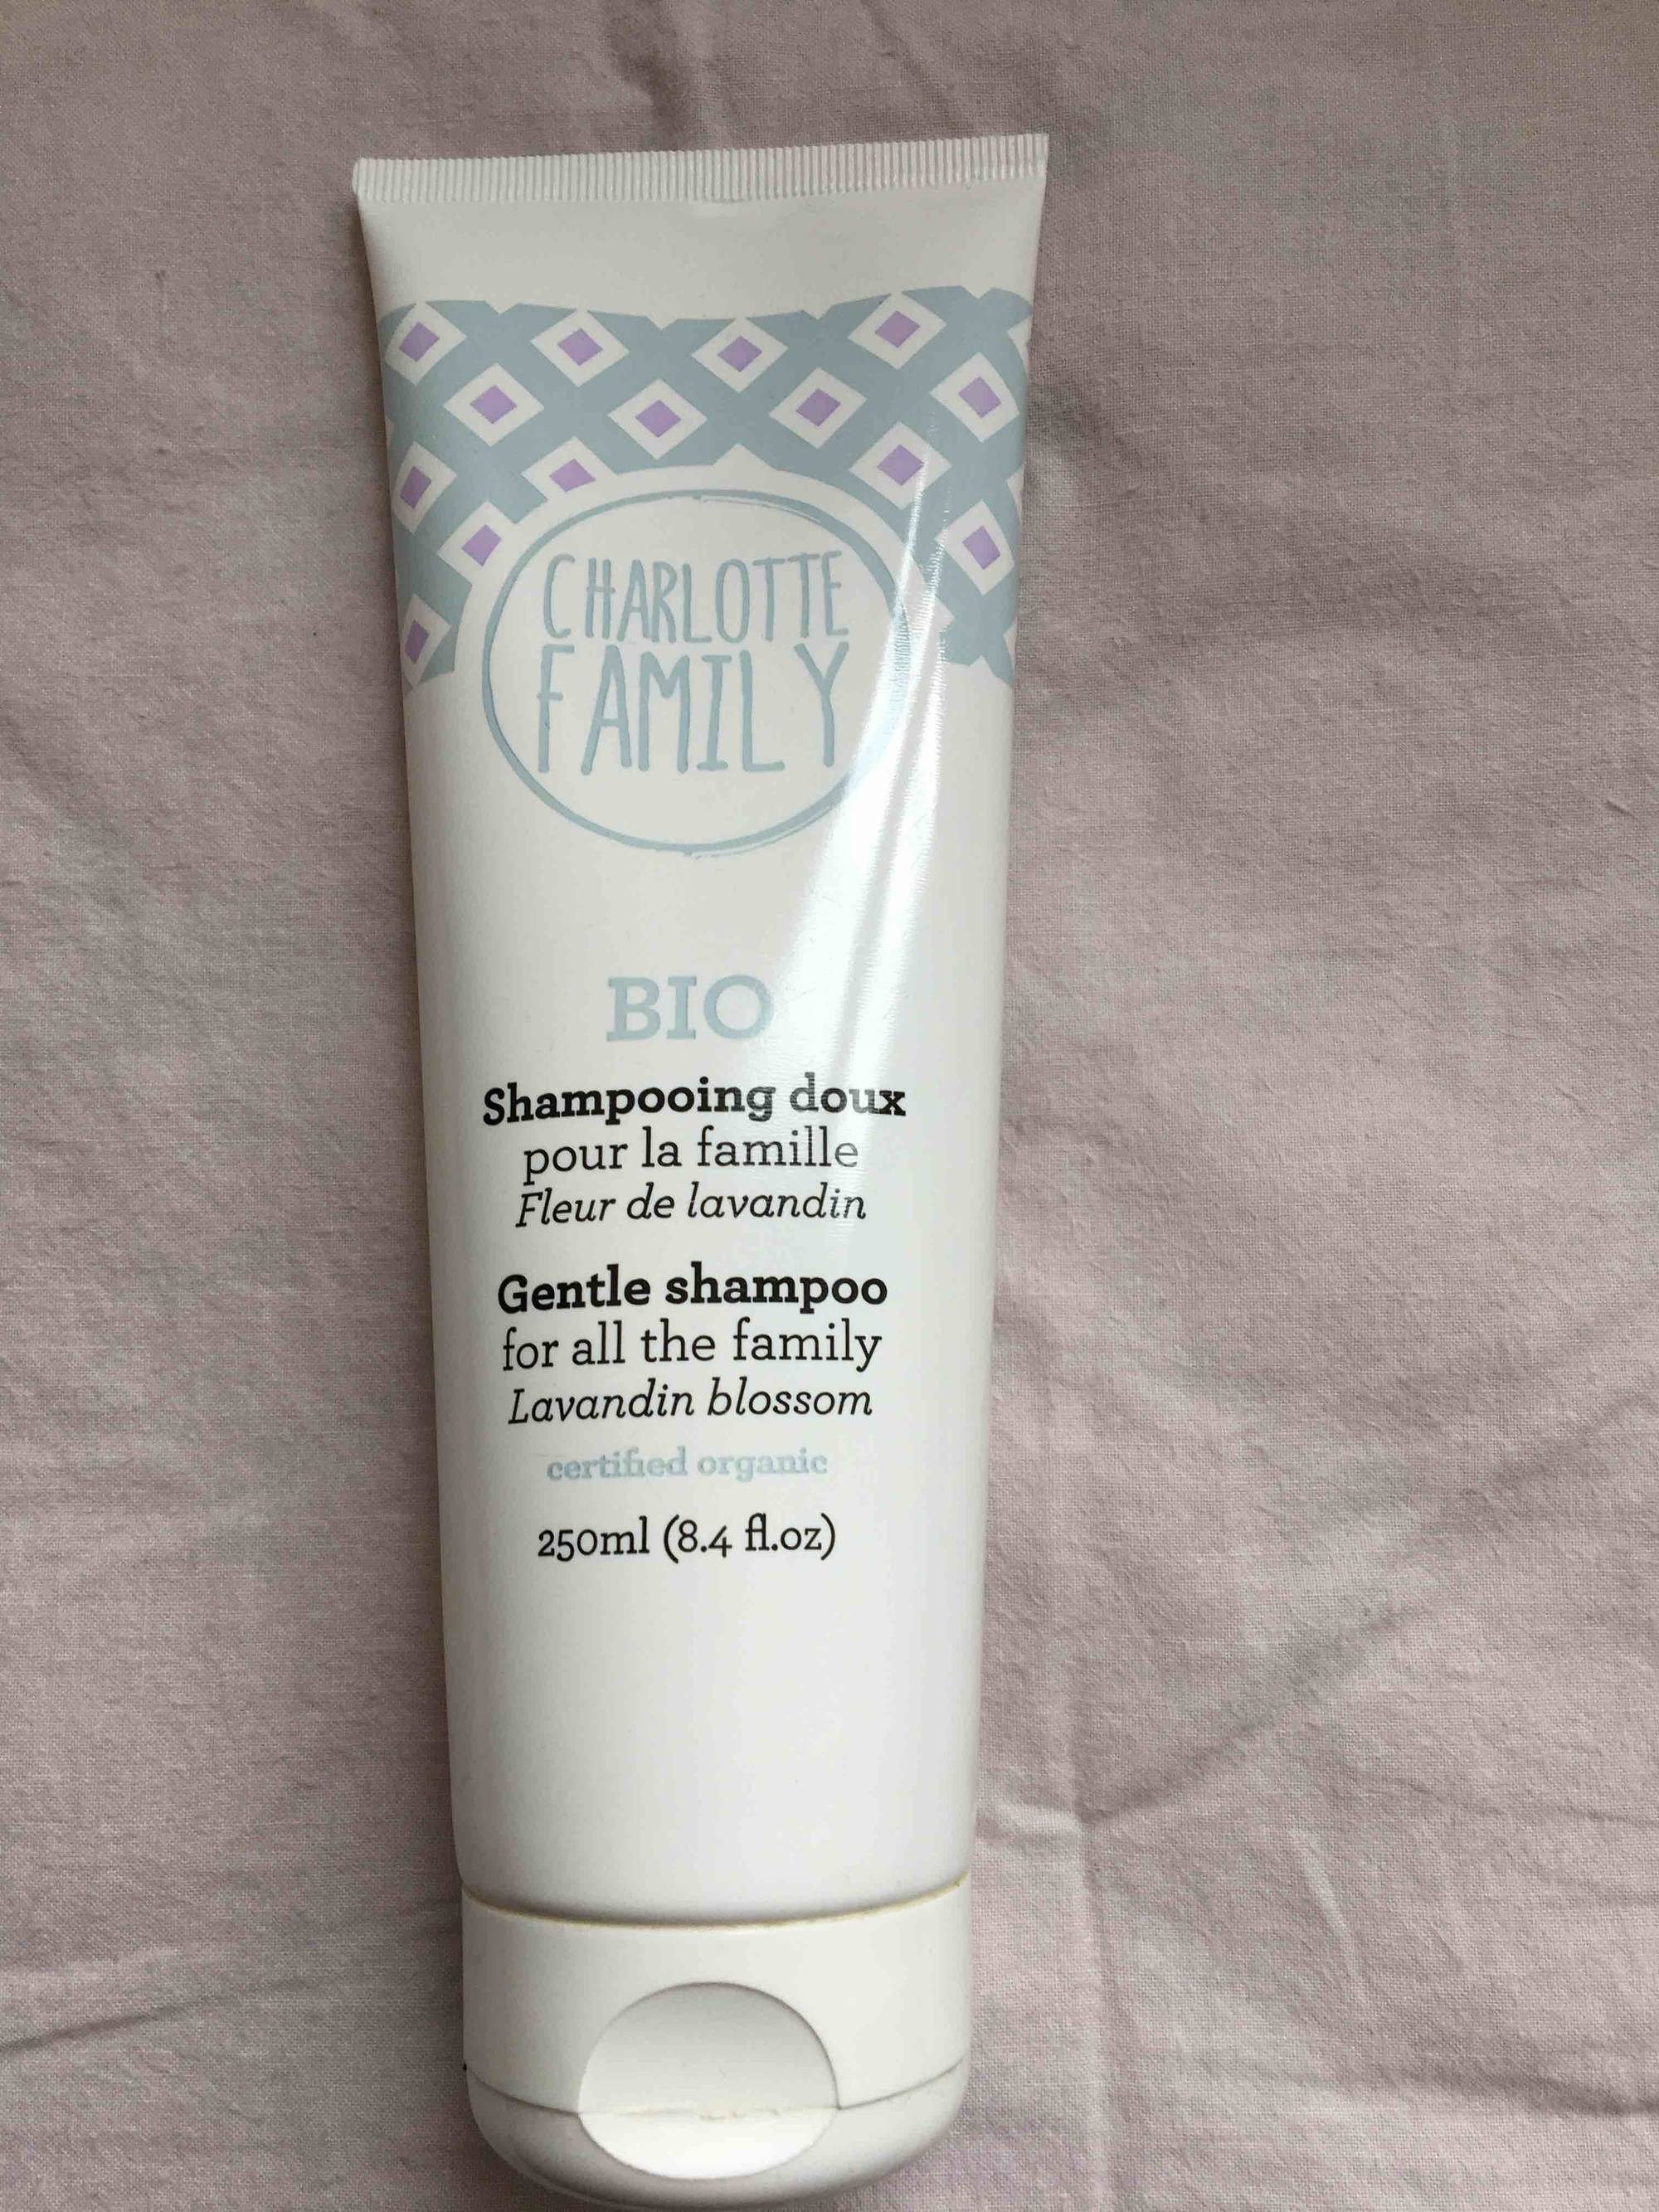 CHARLOTTE FAMILY - Bio shampooing doux fleur de lavandin